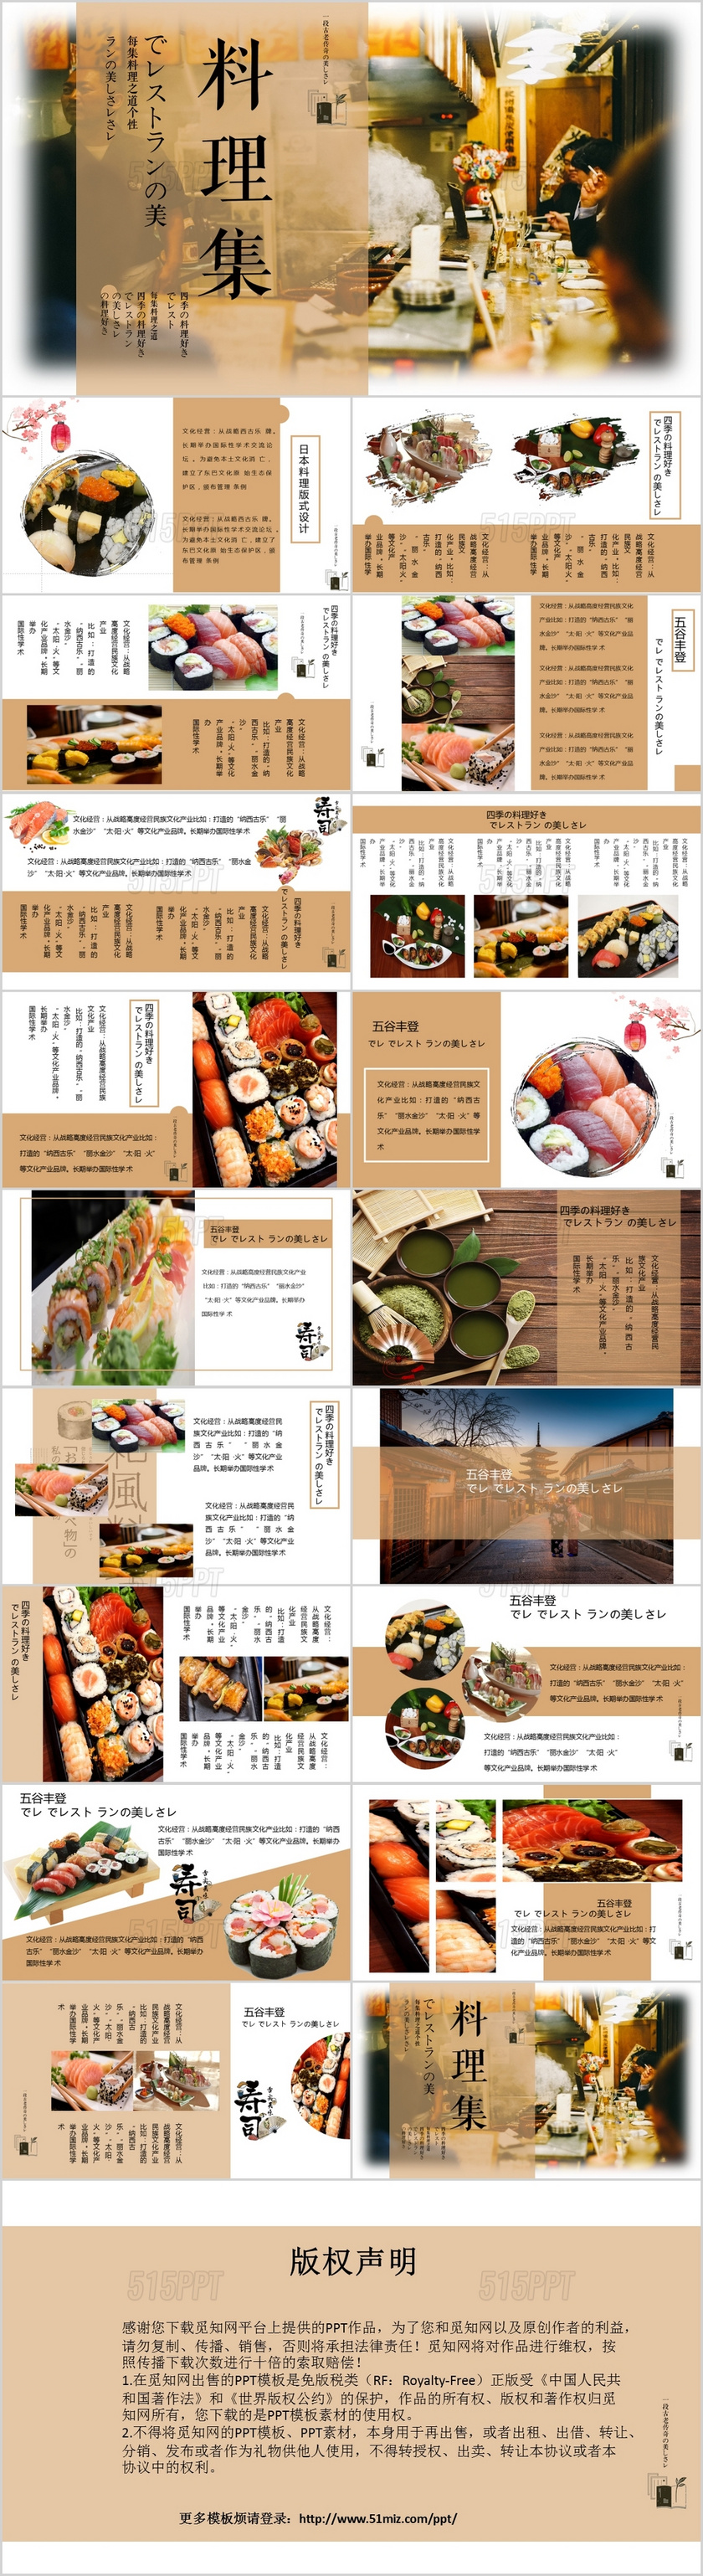 简约小清新日式料理画册PPT模板日本旅游